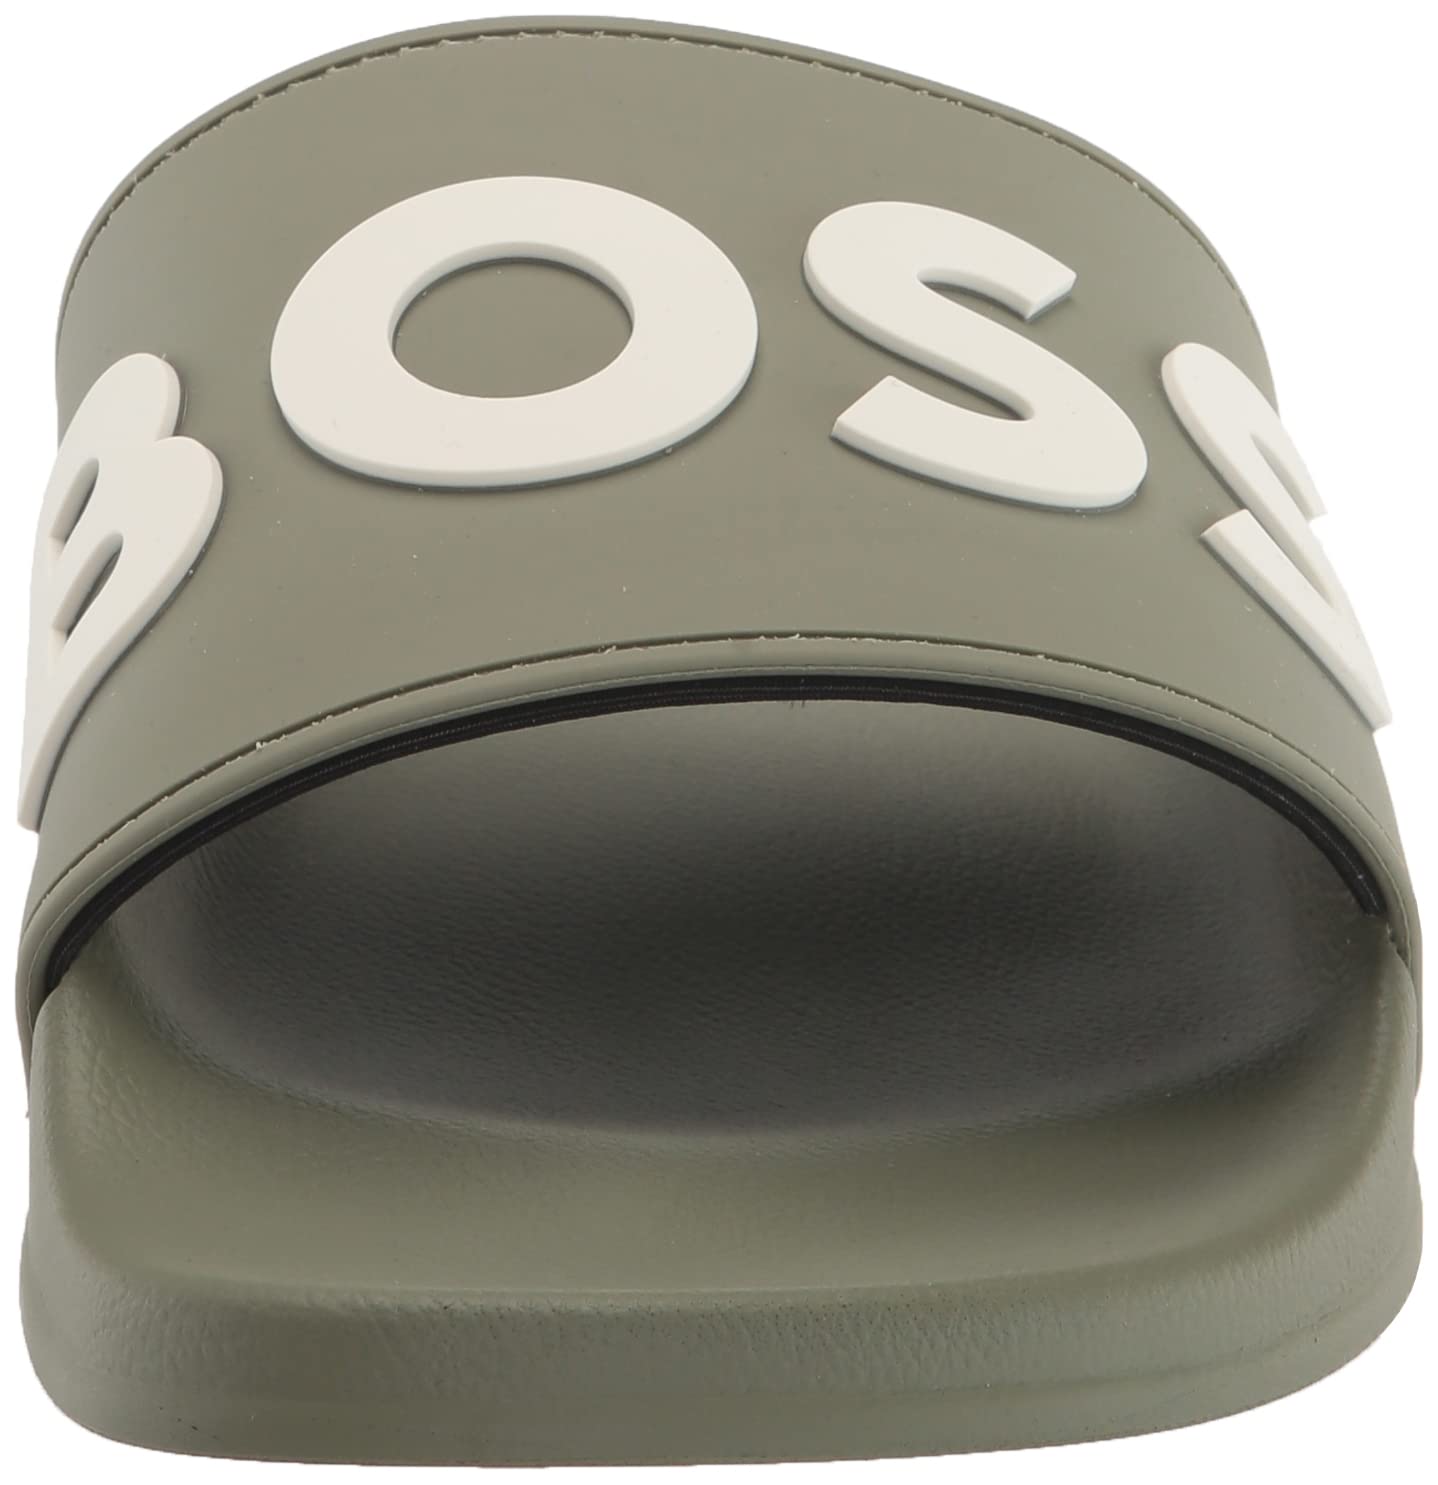 BOSS Men's Kirk Bold Logo Rubber Slide Sandal